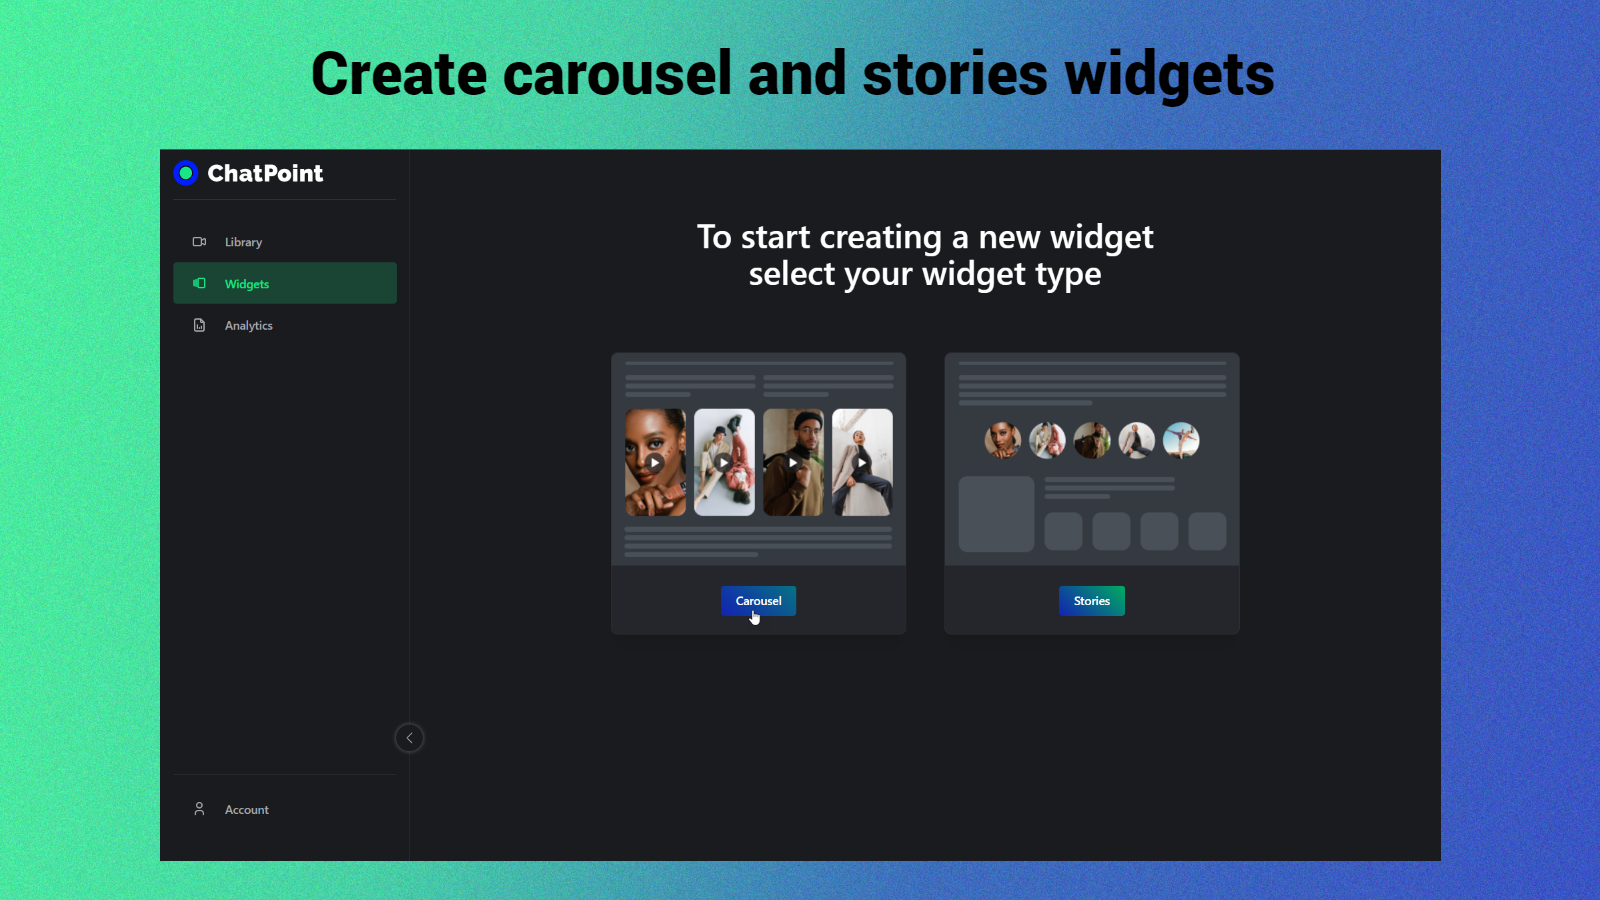 Añade widgets de carrusel y stories a tu página de inicio, producto y colecciones